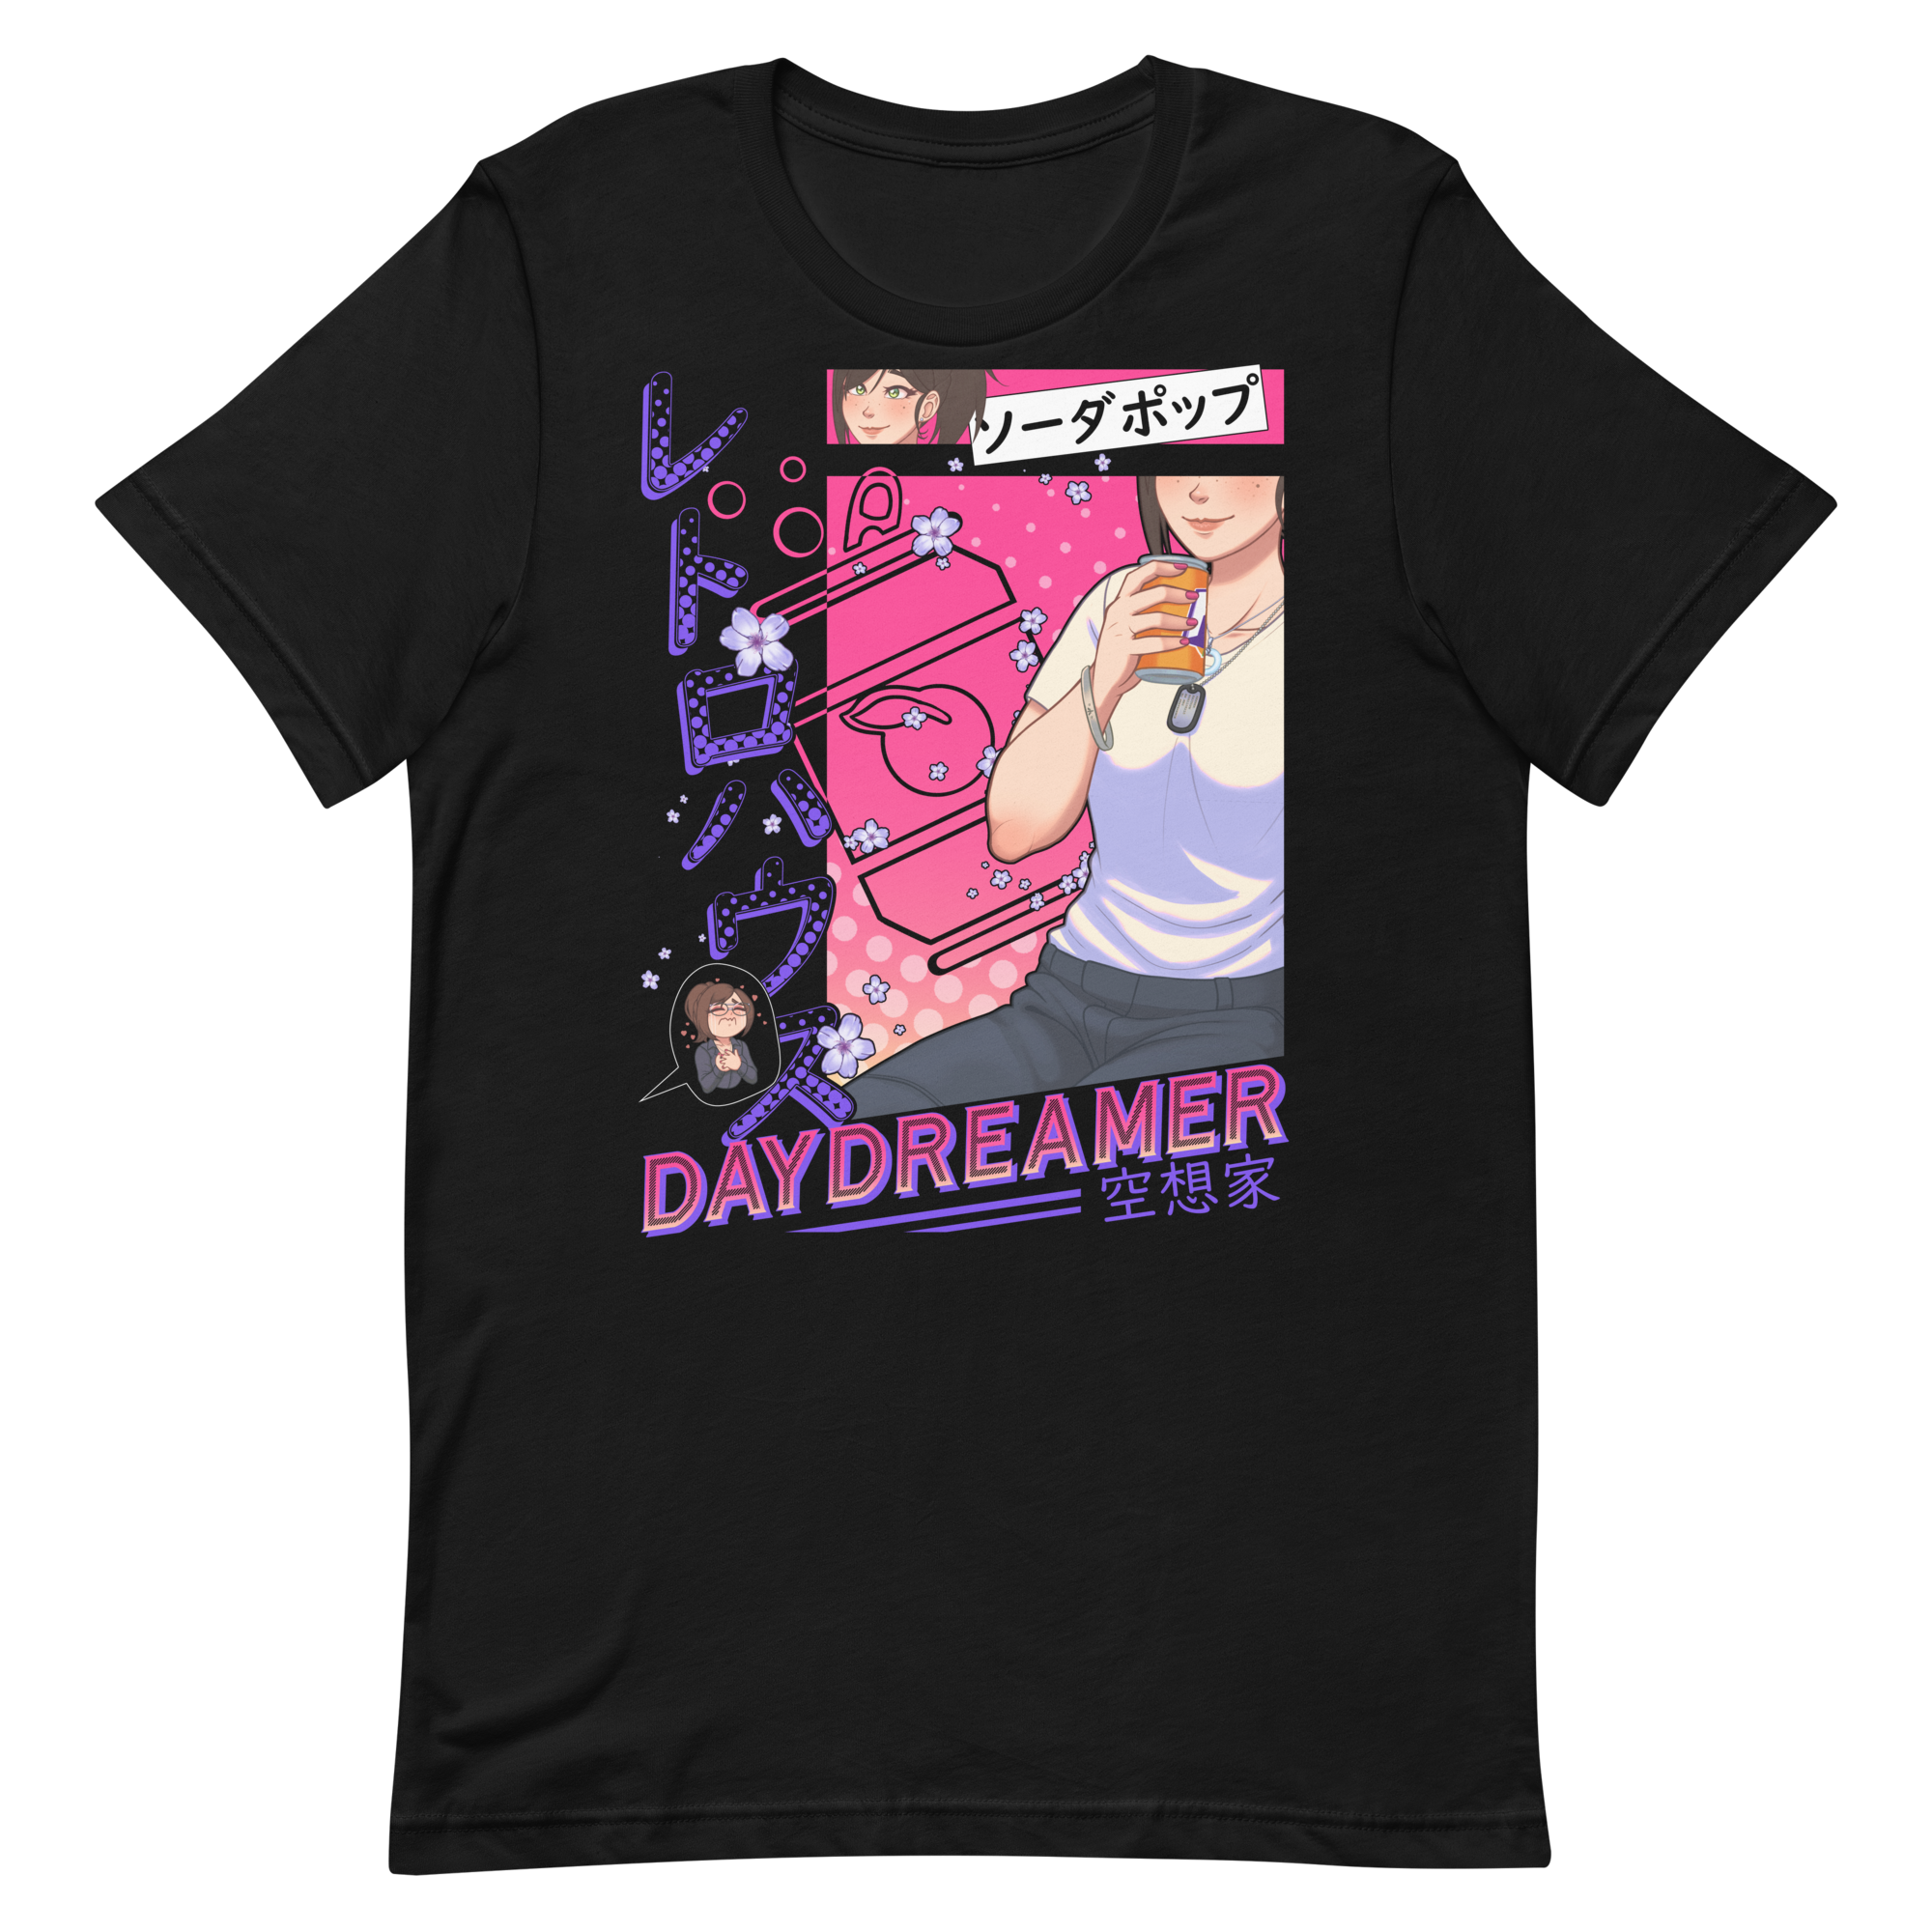 Daydreamer shirt